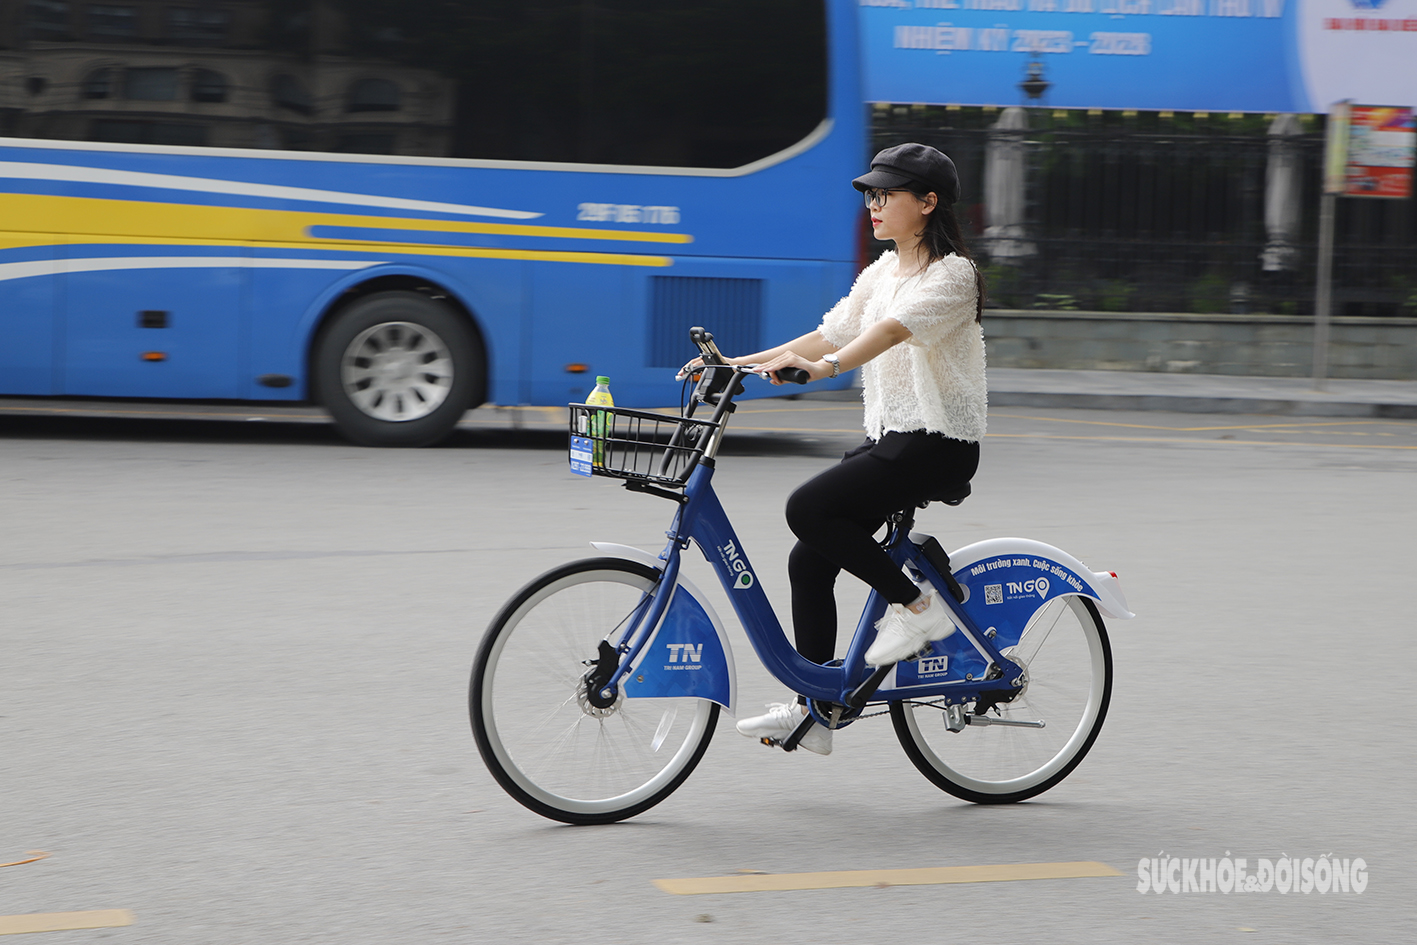 Xe đạp công cộng chính thức xuất hiện, người dân Thủ đô phấn khởi trải nghiệm - Ảnh 10.